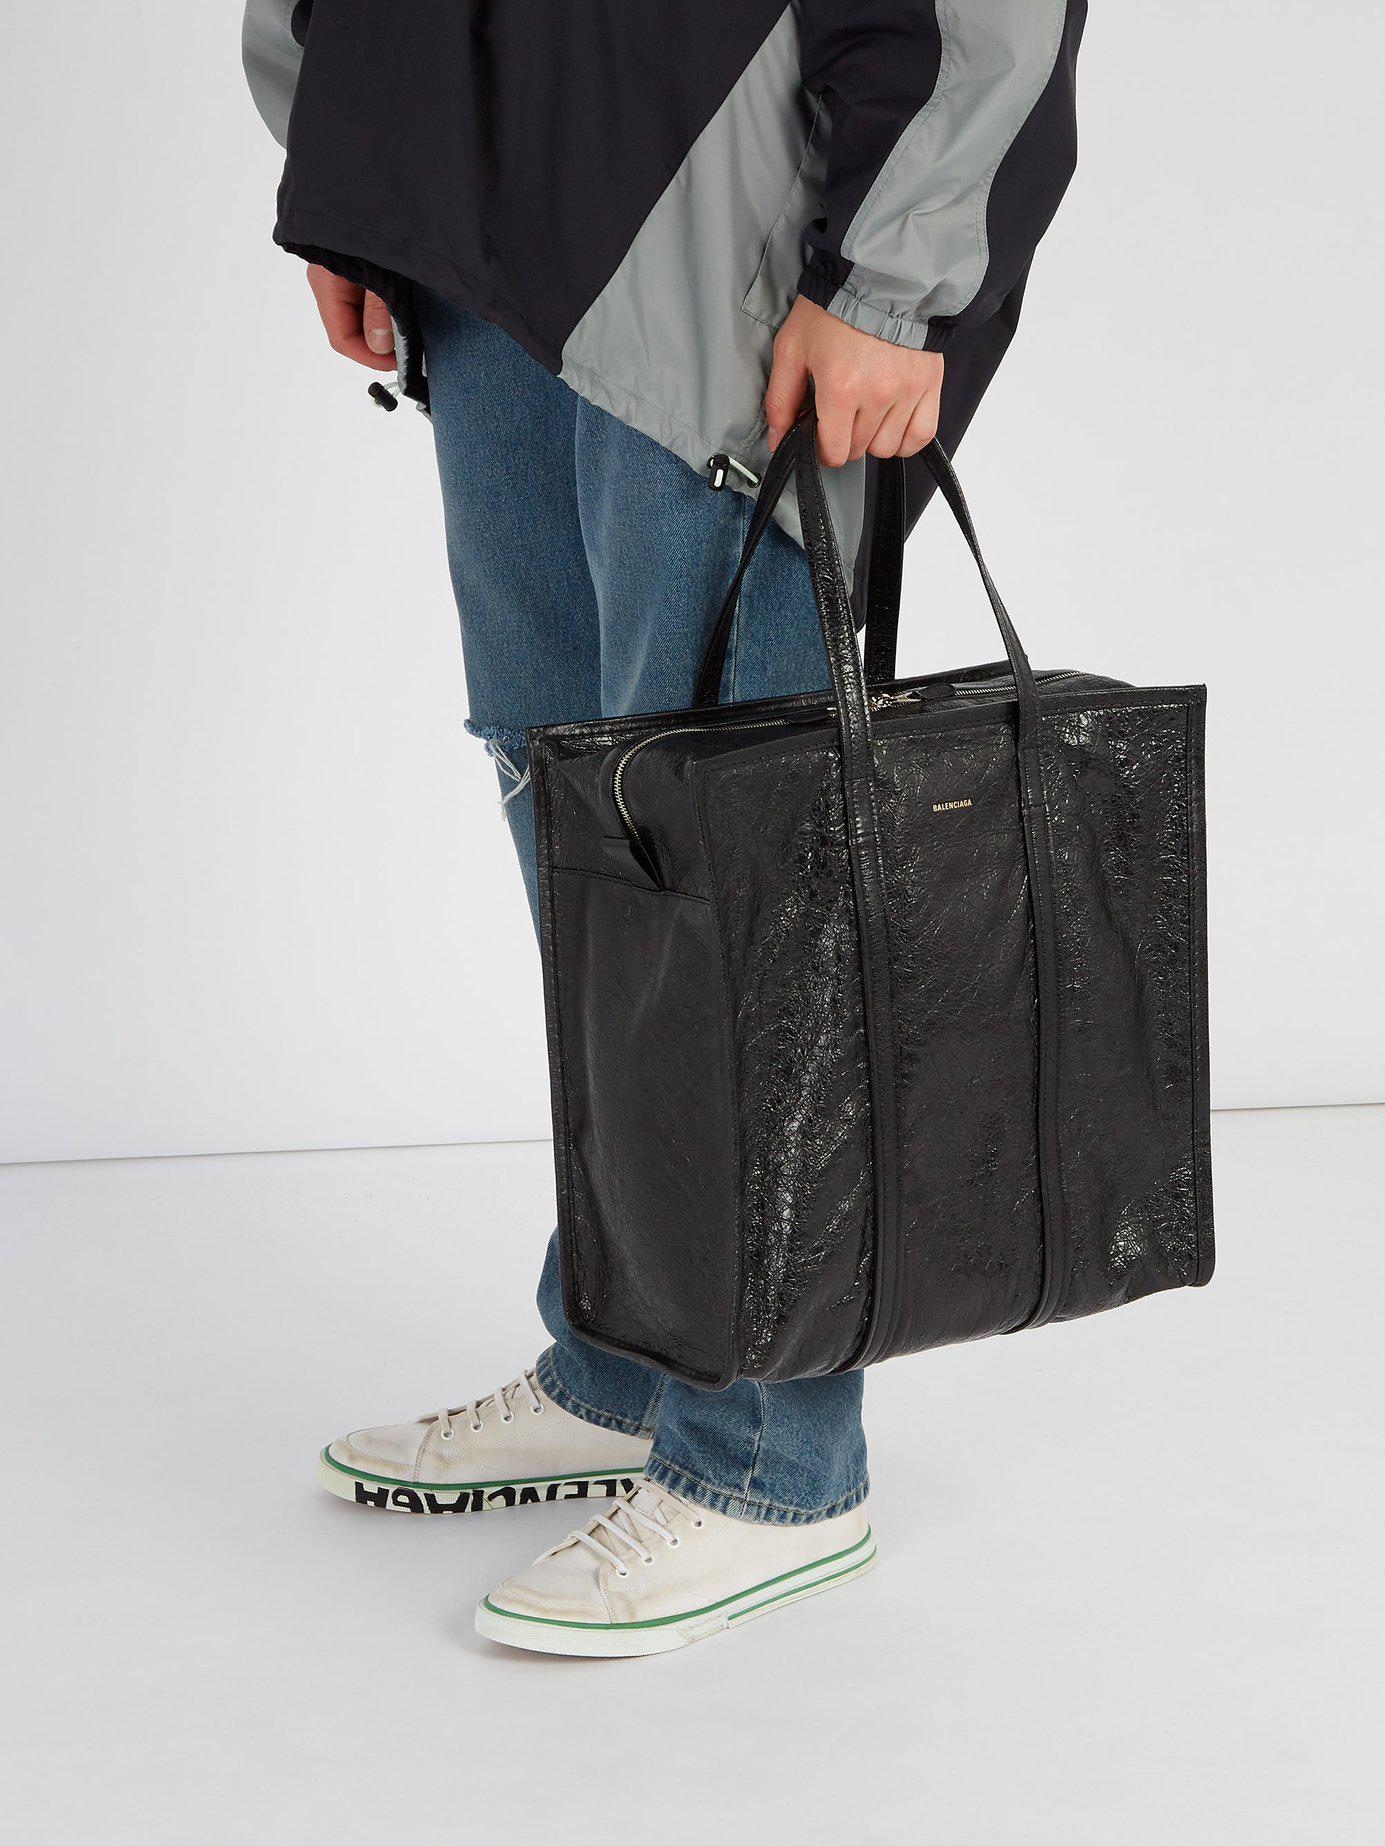 Balenciaga Bazar Shopper M Leather Bag in Black for Men - Lyst